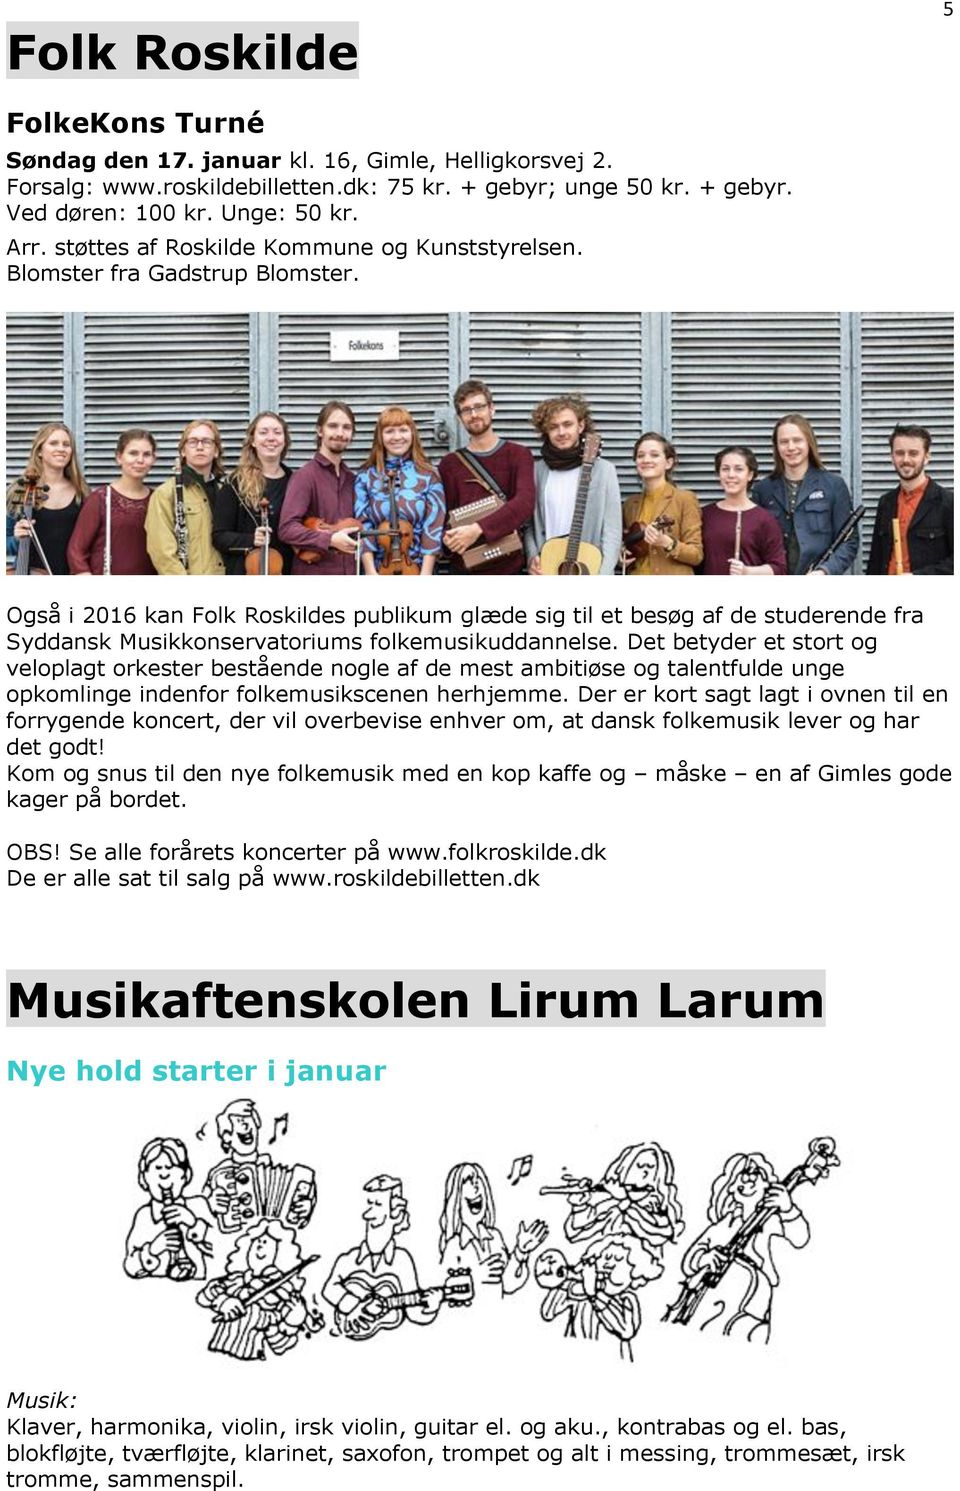 Også i 2016 kan Folk Roskildes publikum glæde sig til et besøg af de studerende fra Syddansk Musikkonservatoriums folkemusikuddannelse.